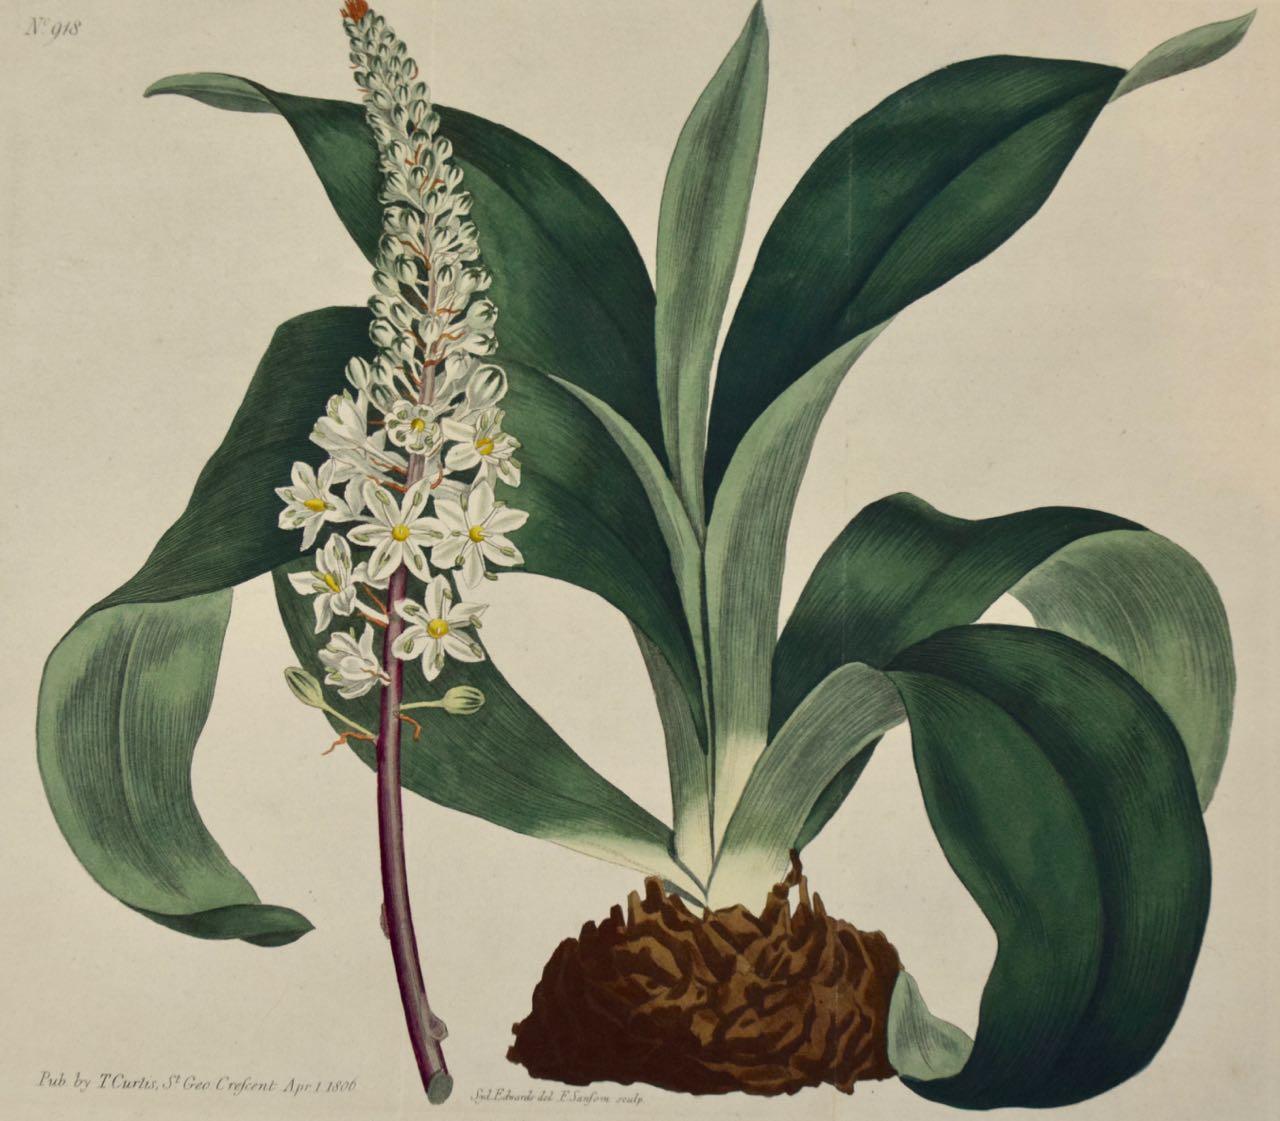 Cette gravure botanique du début du XIXe siècle, coloriée à la main et dépliante, est intitulée "Ornithogalum Squilla" (oignon de mer à racine rouge ou pissenlit officinal), planche 918, publiée à Londres en 1806 dans "The Botanical Magazine, or